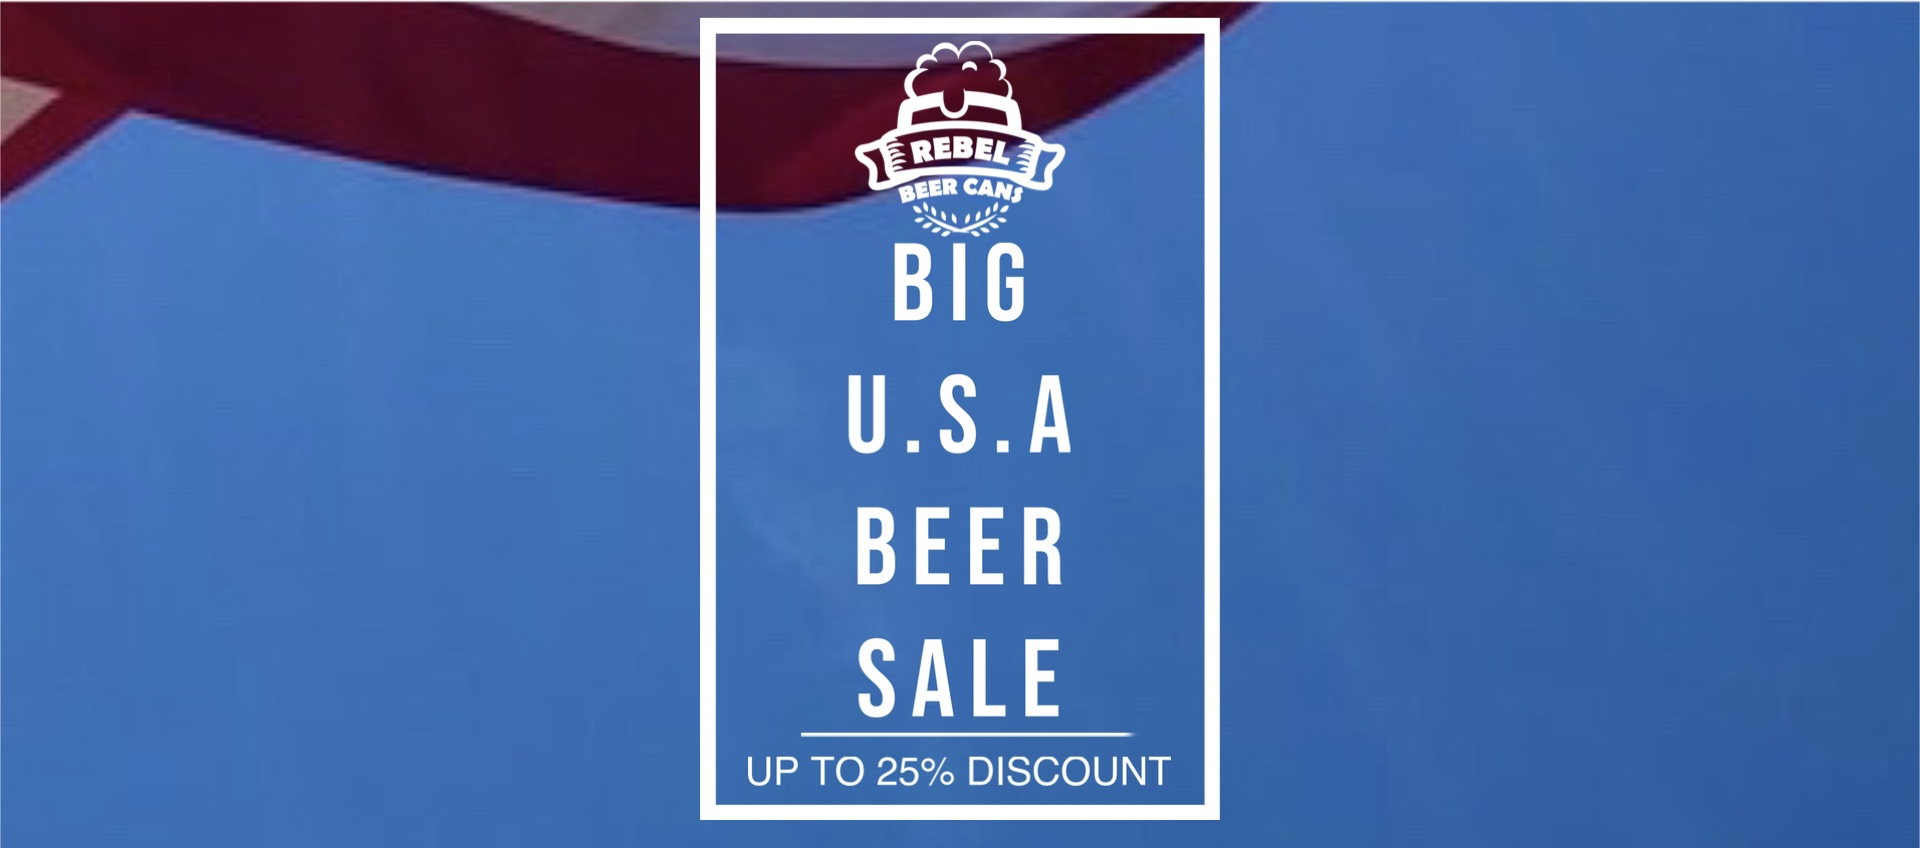 Big U.S.A Beer Sale!